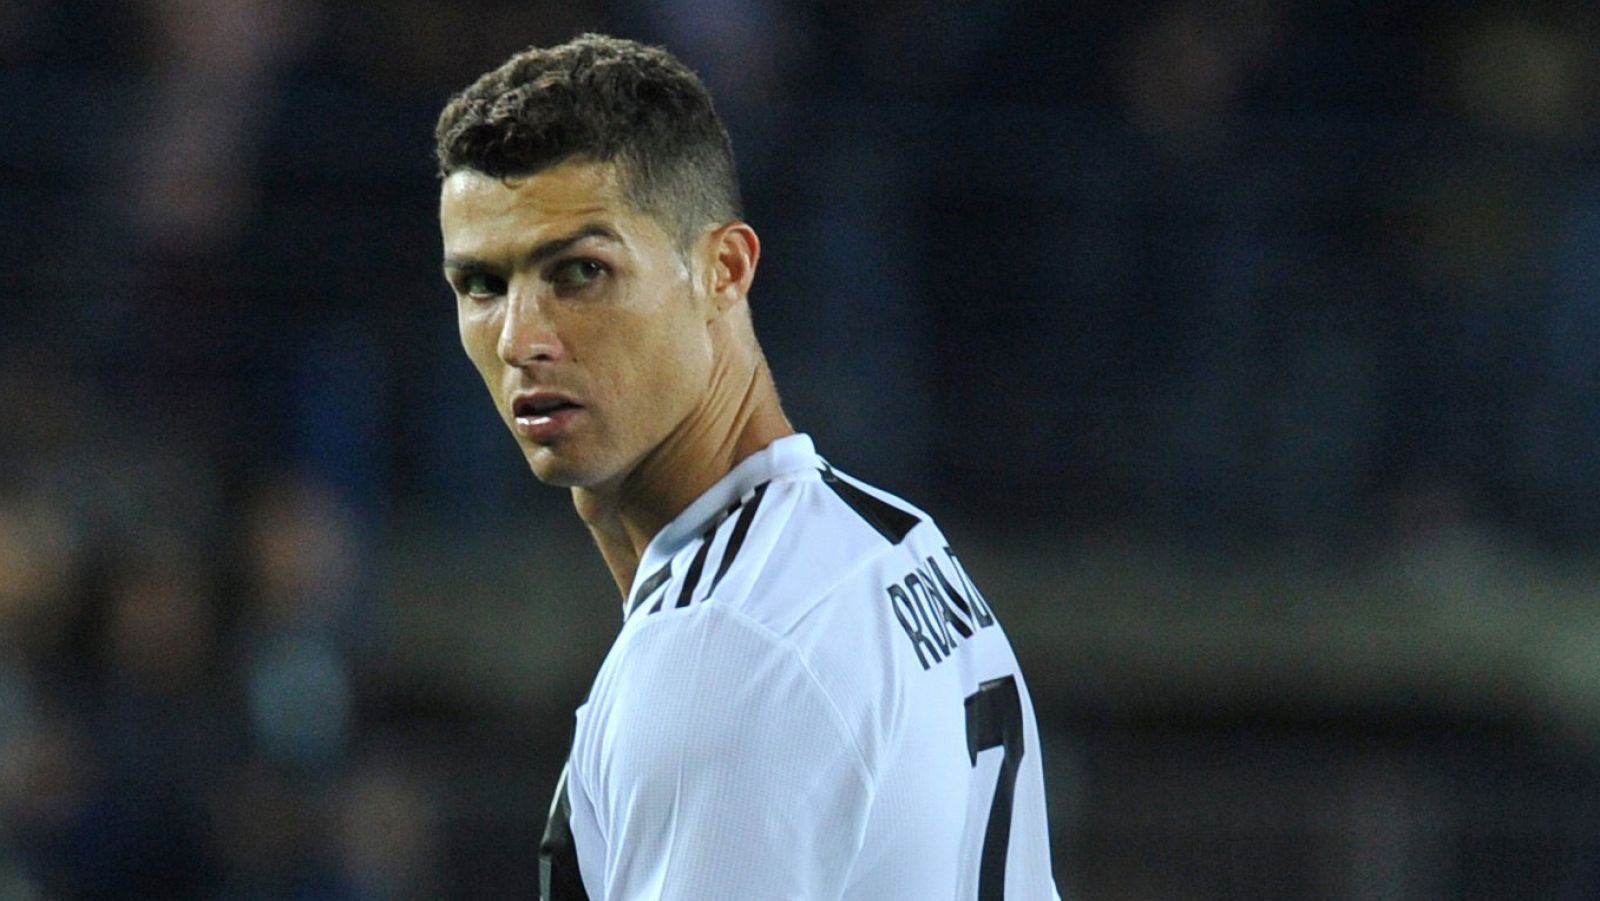 El jugador de la Juventus Cristiano Ronaldo durante un partido de la Serie A.